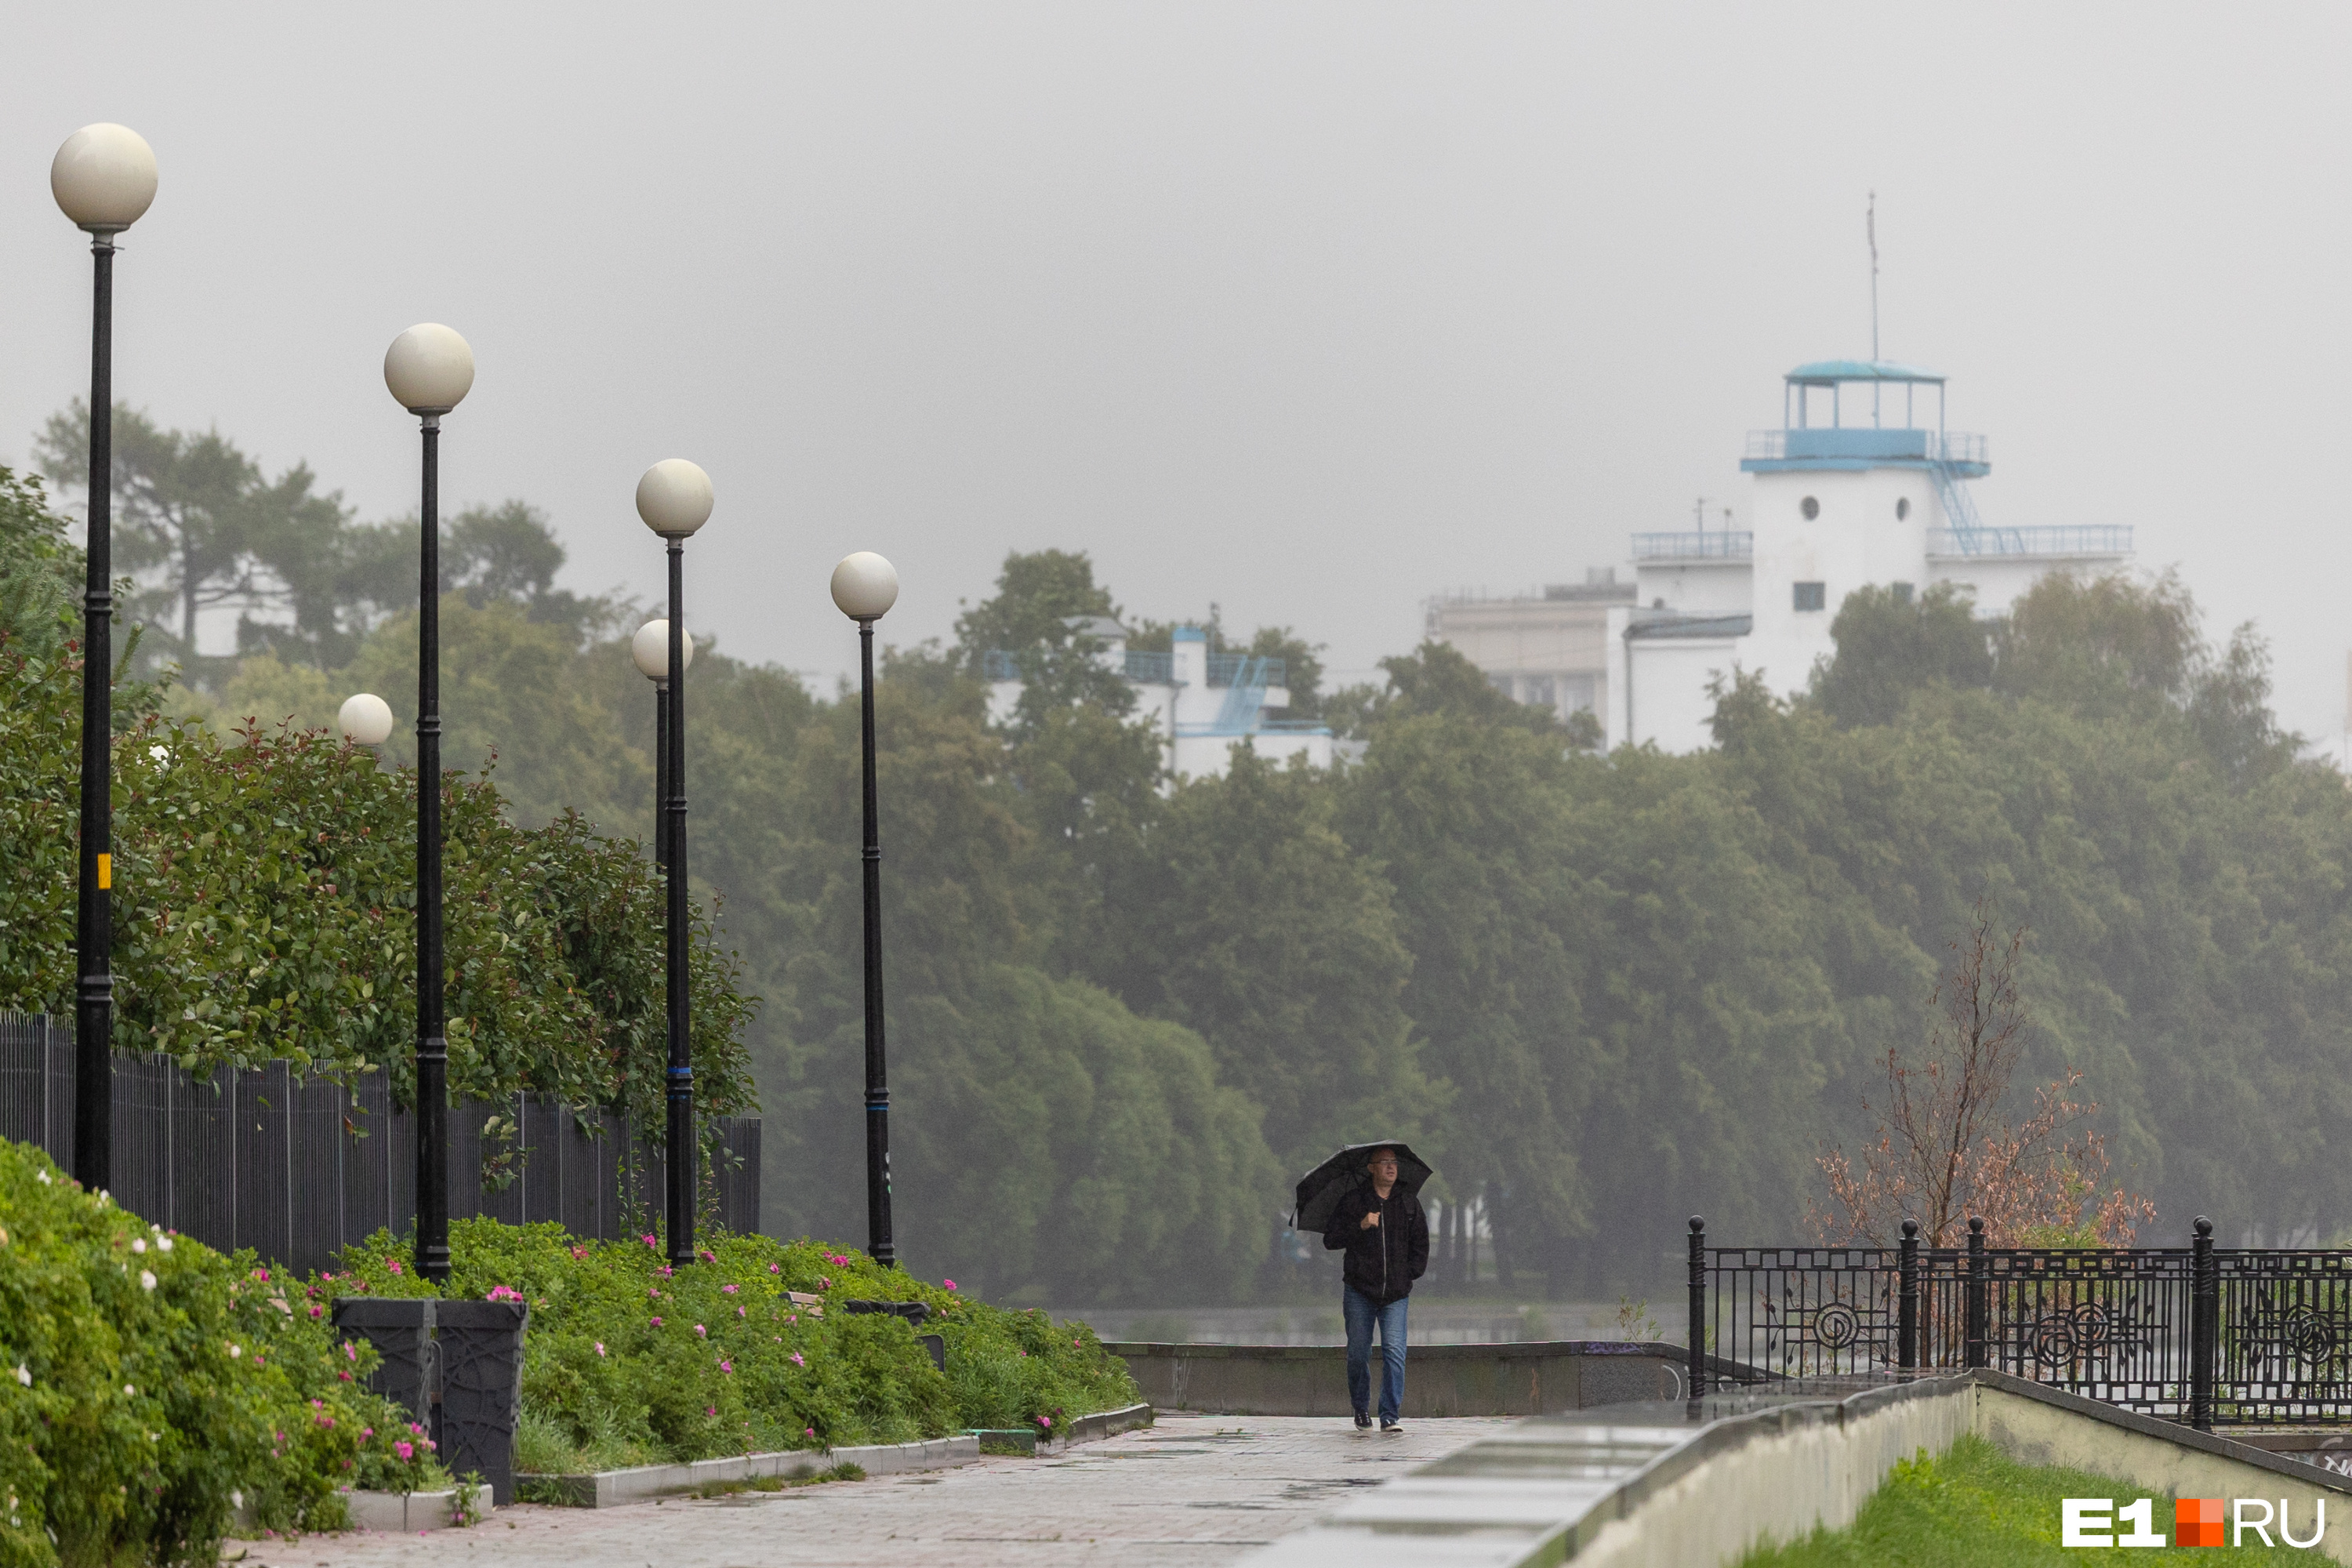 Летом и не пахнет. Екатеринбург накрыло противным моросящим дождем: фото опустевшего города